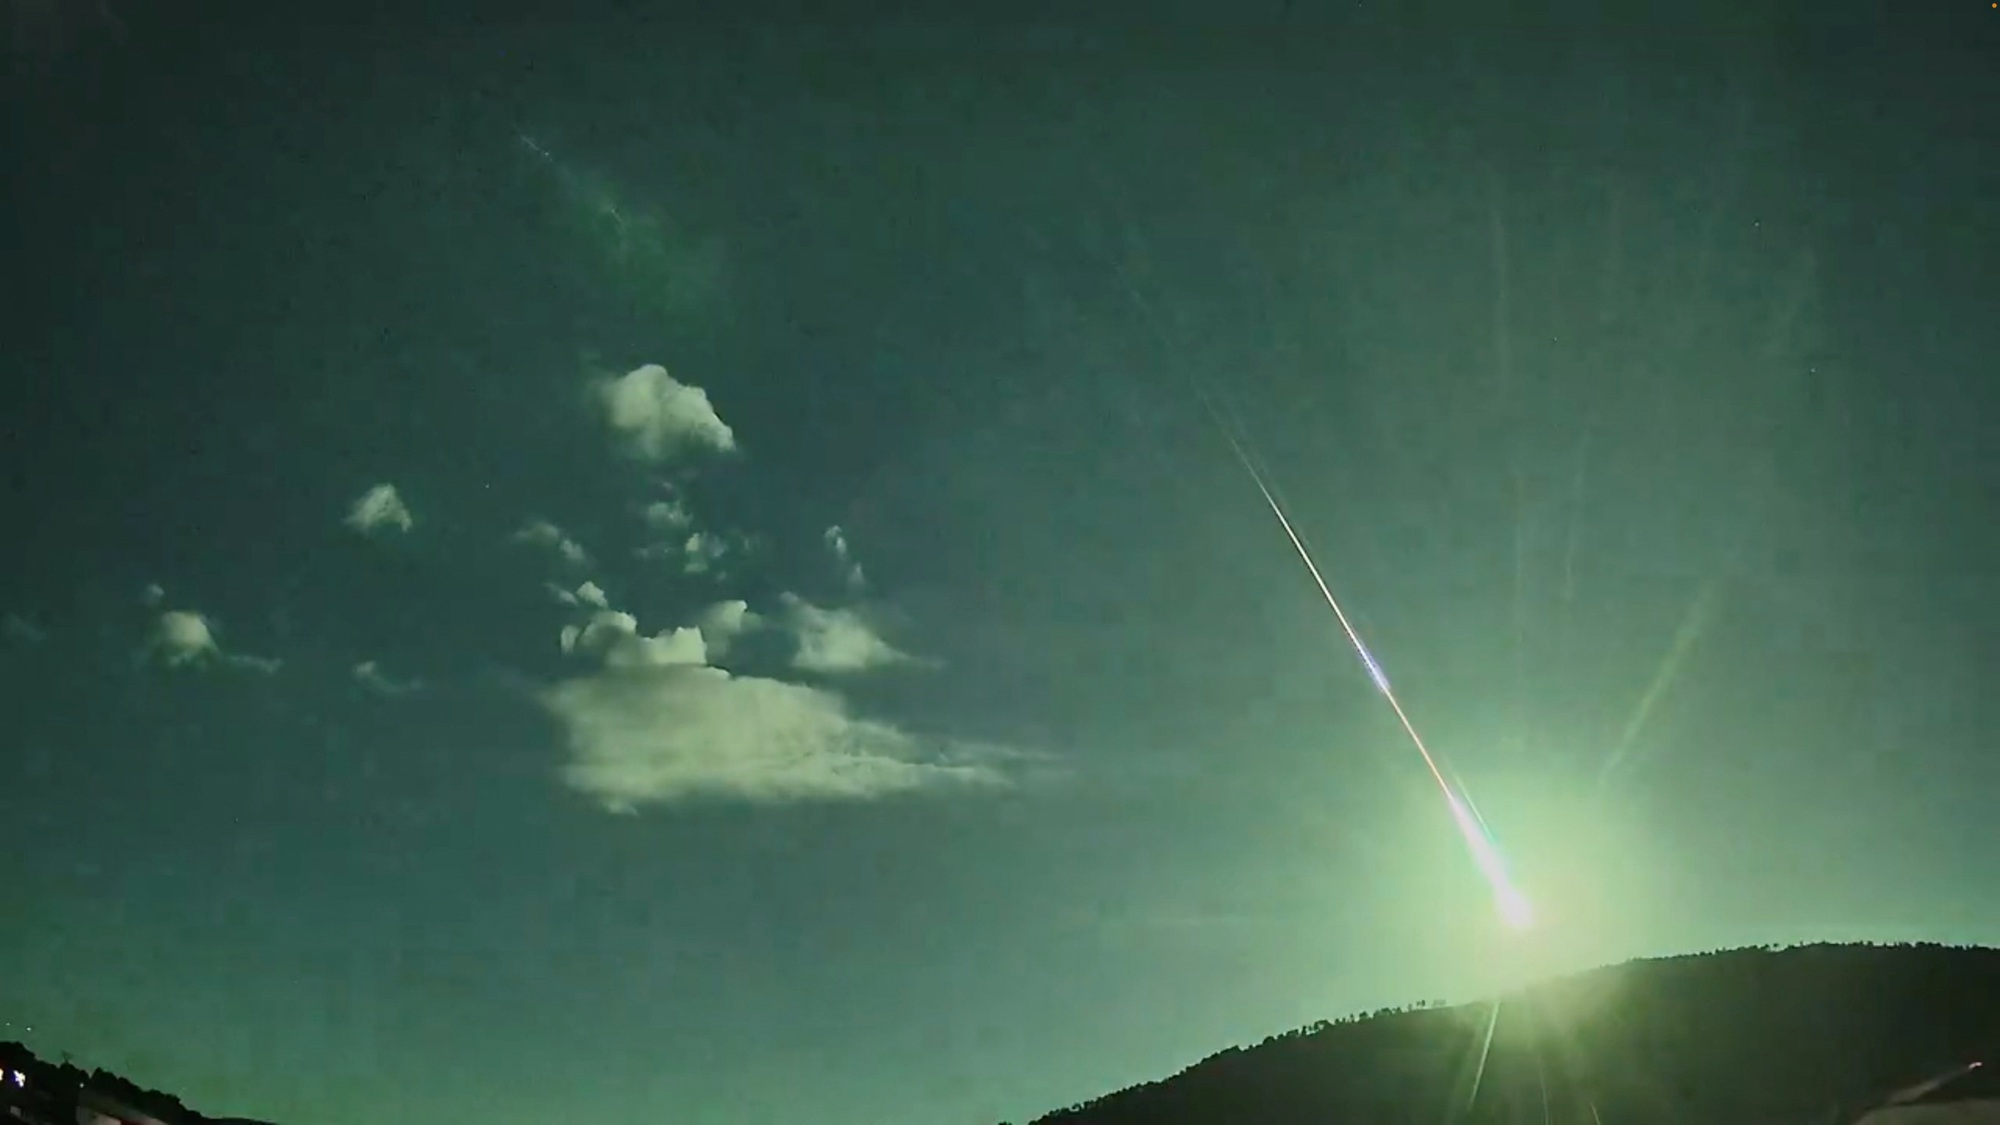 Video: Hiện tượng lạ khiến bầu trời đêm bỗng lóe sáng xanh kỳ diệu, khoảnh khắc hiếm tình cờ được ghi lại khiến nhiều người kinh ngạc- Ảnh 2.